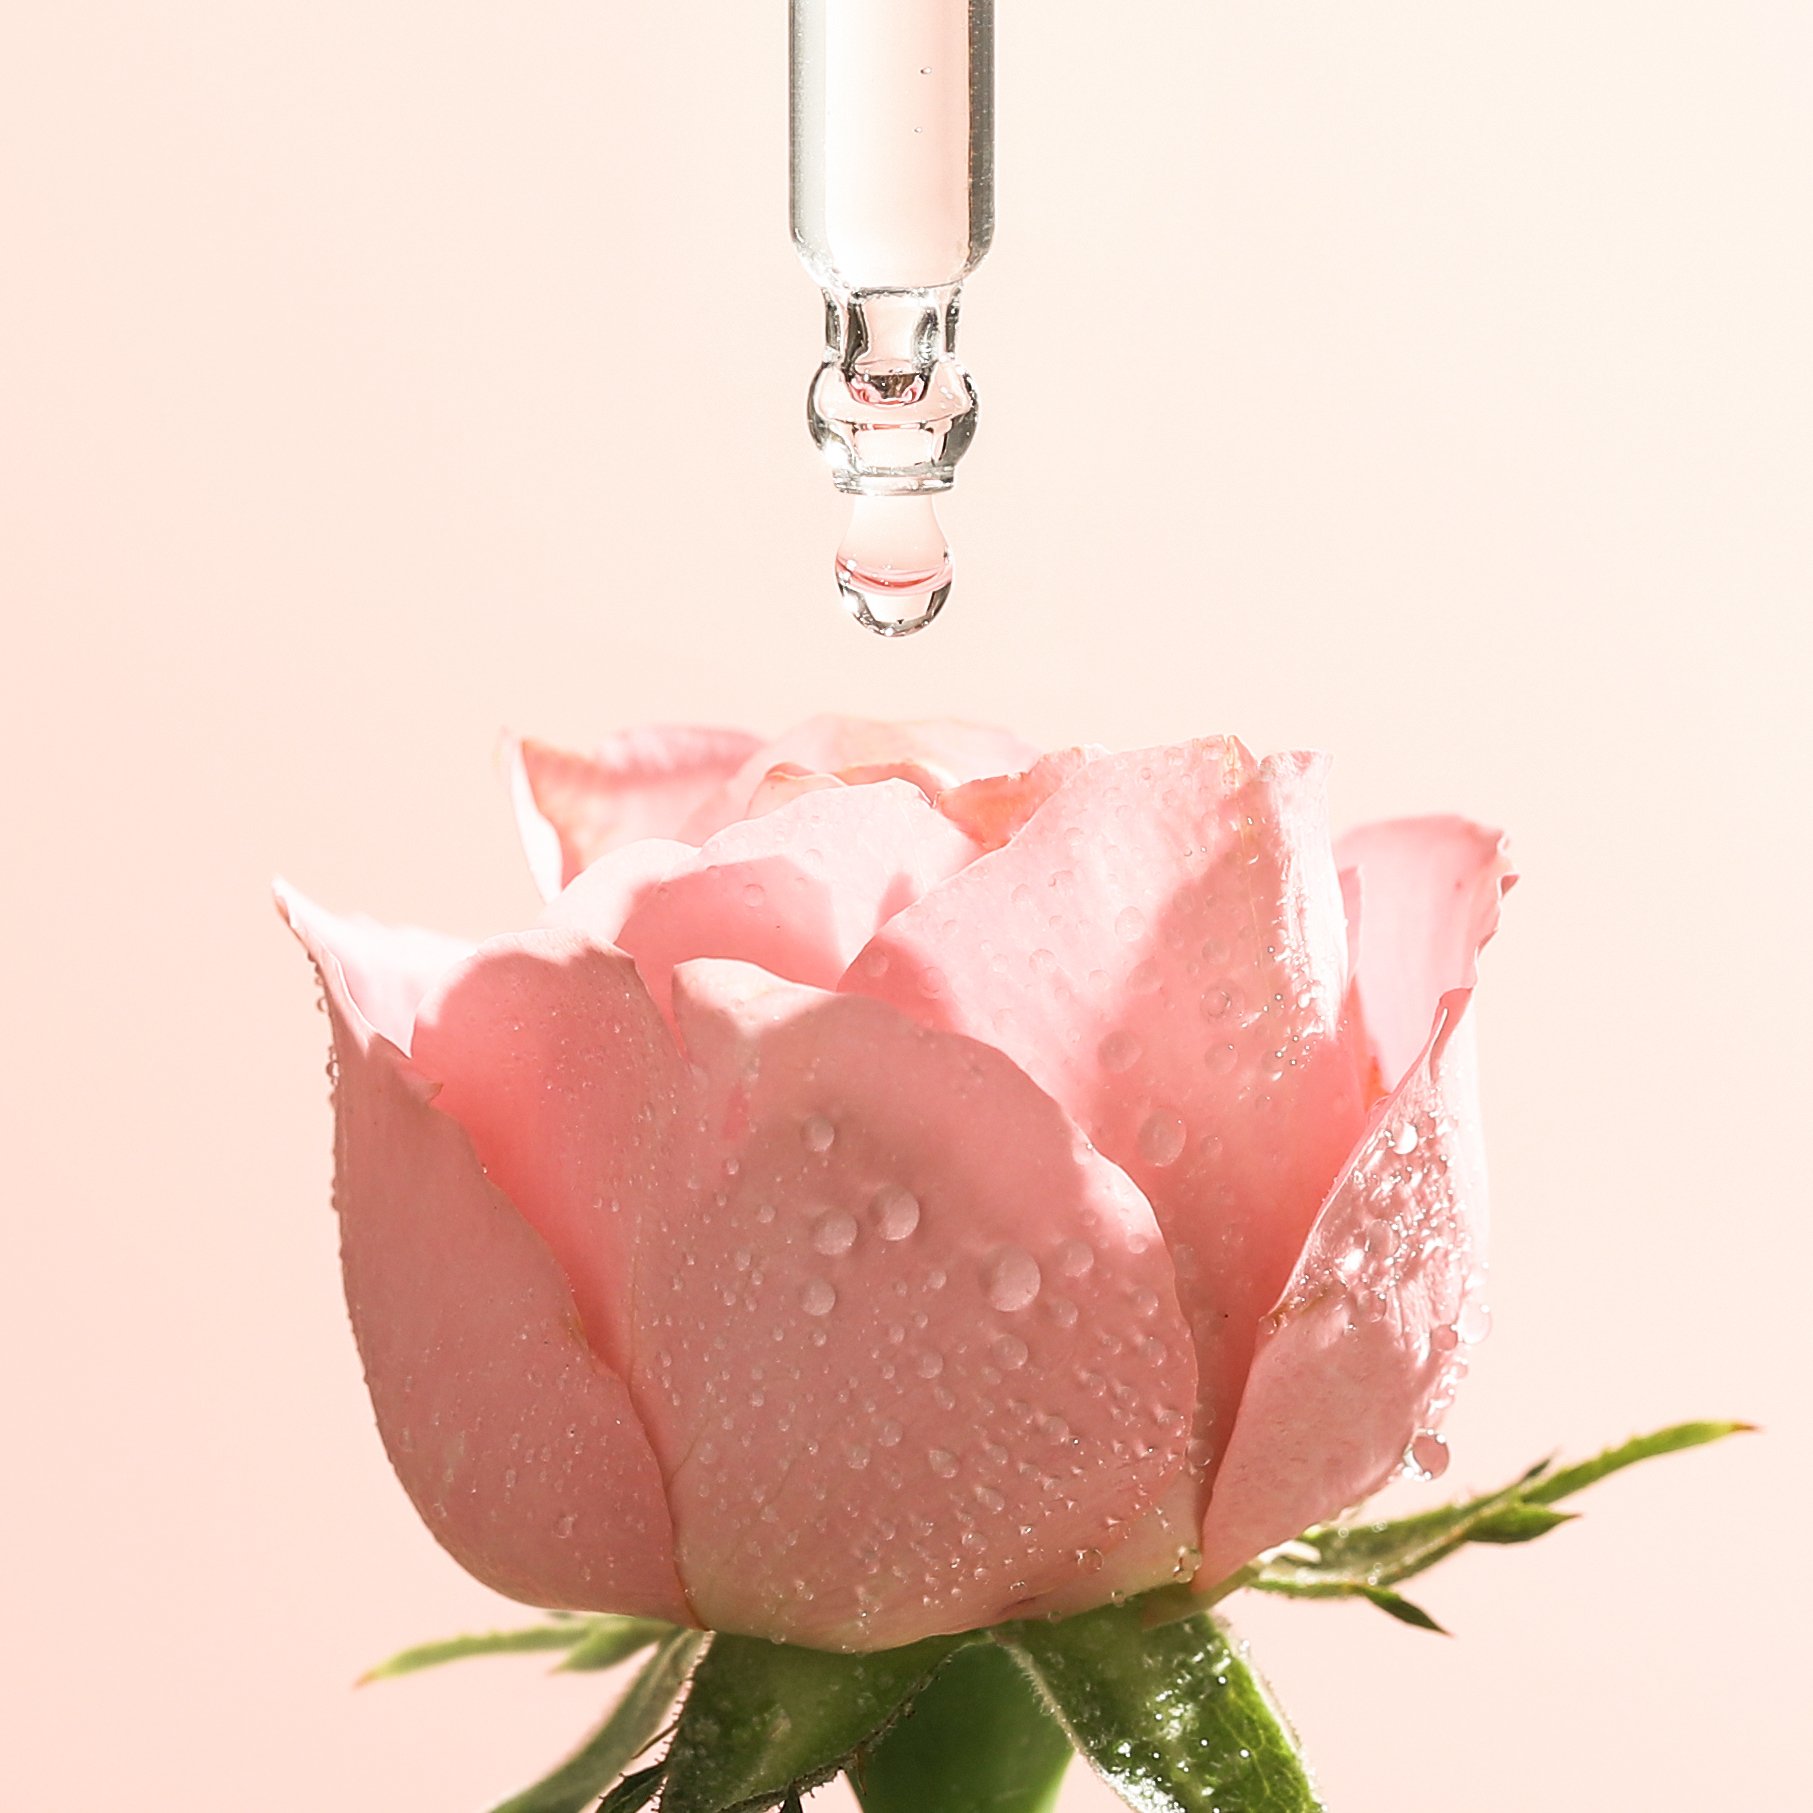 Combo cấp ẩm và phục hồi Cocoon: Nước hoa hồng 140ml + Tinh chất hoa hồng 30ml + Thạch hoa hồng dưỡng ẩm 30ml